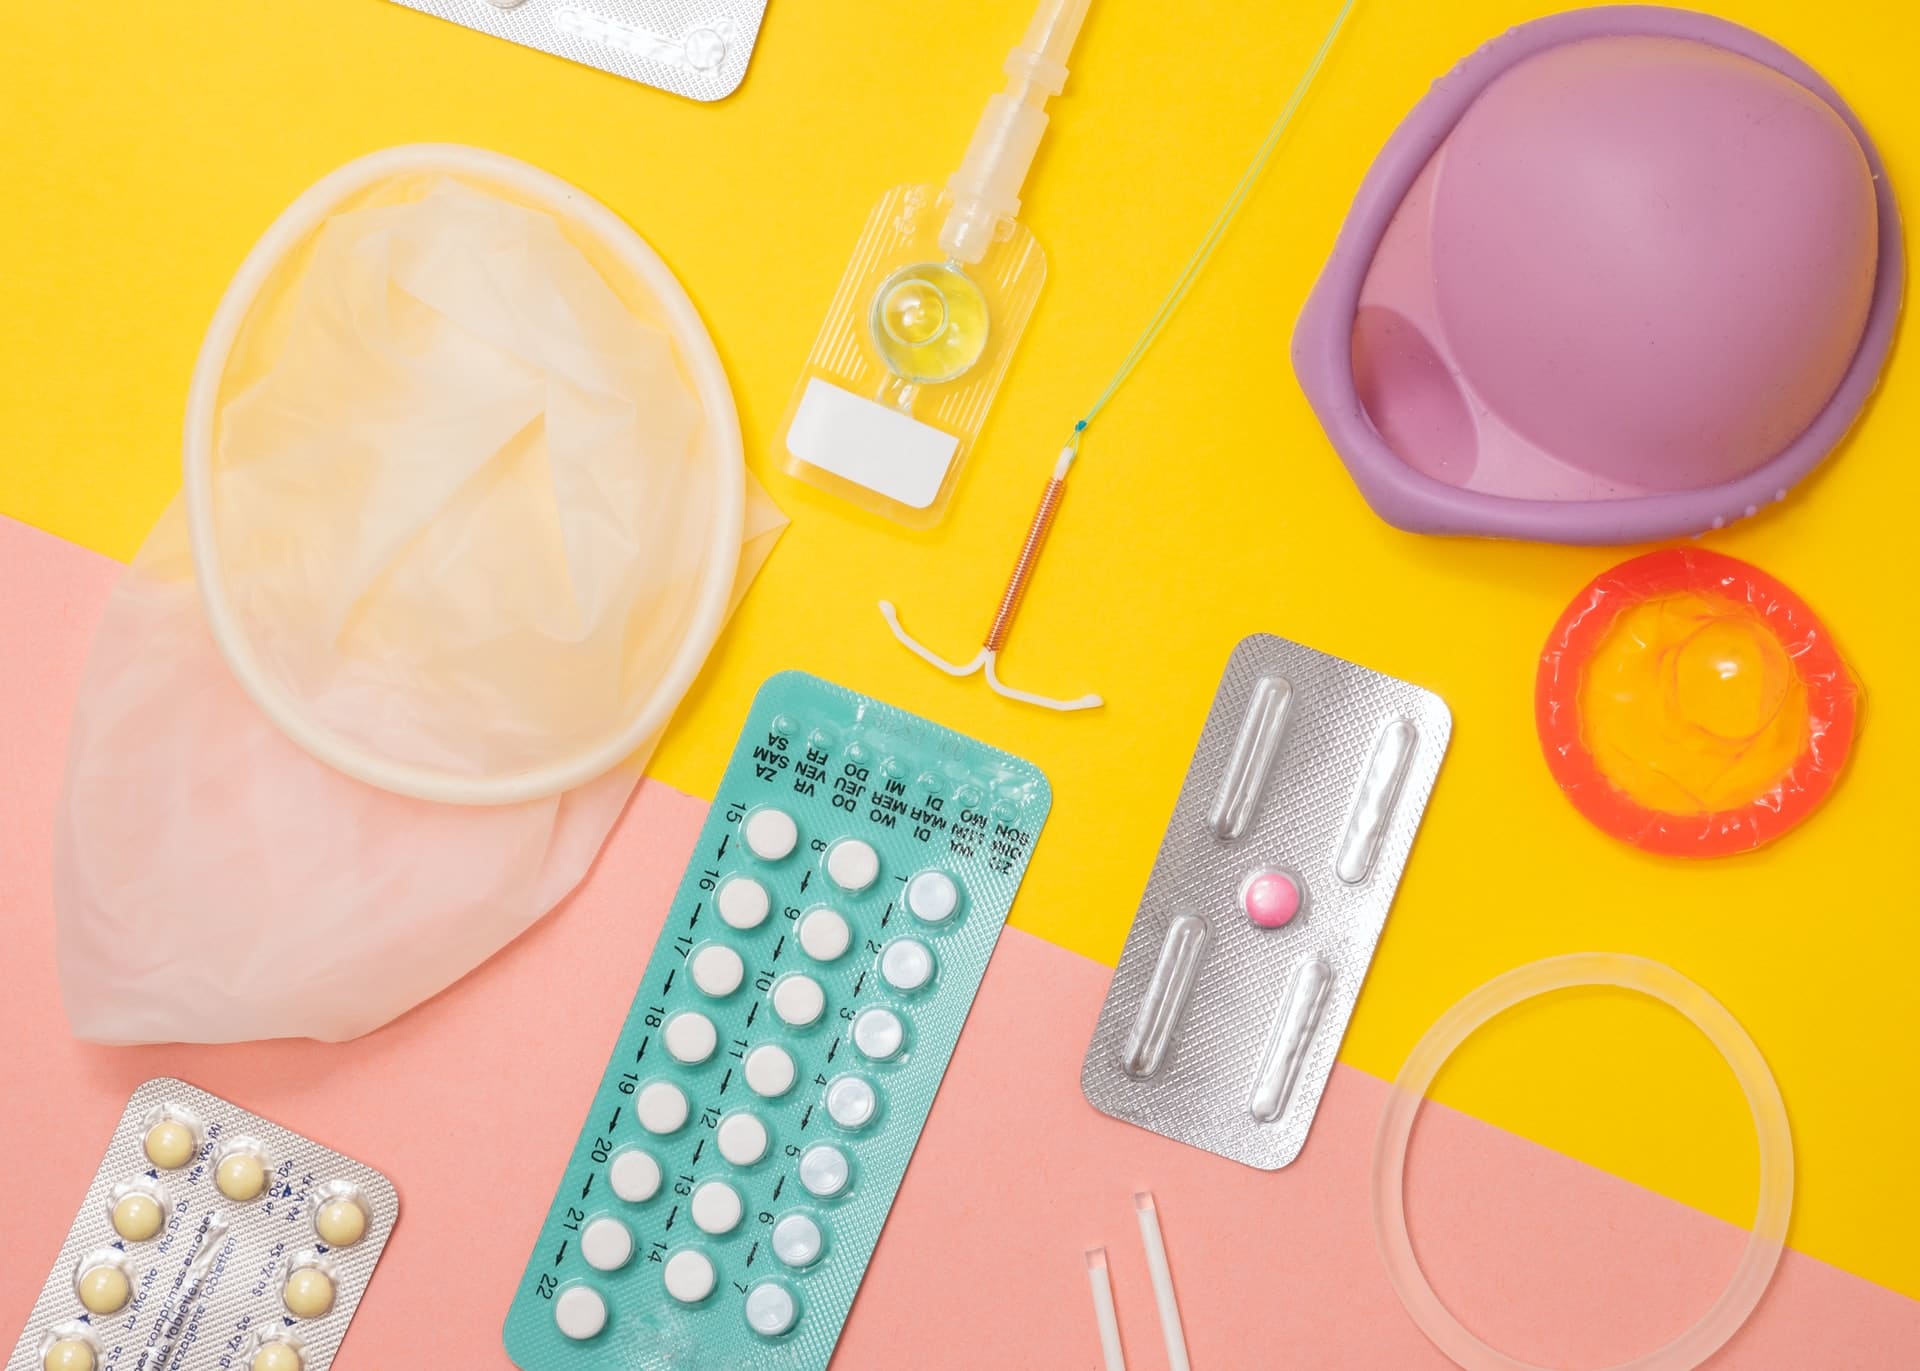 Antykoncepcja hormonalna – działanie, rodzaje i skutki uboczne